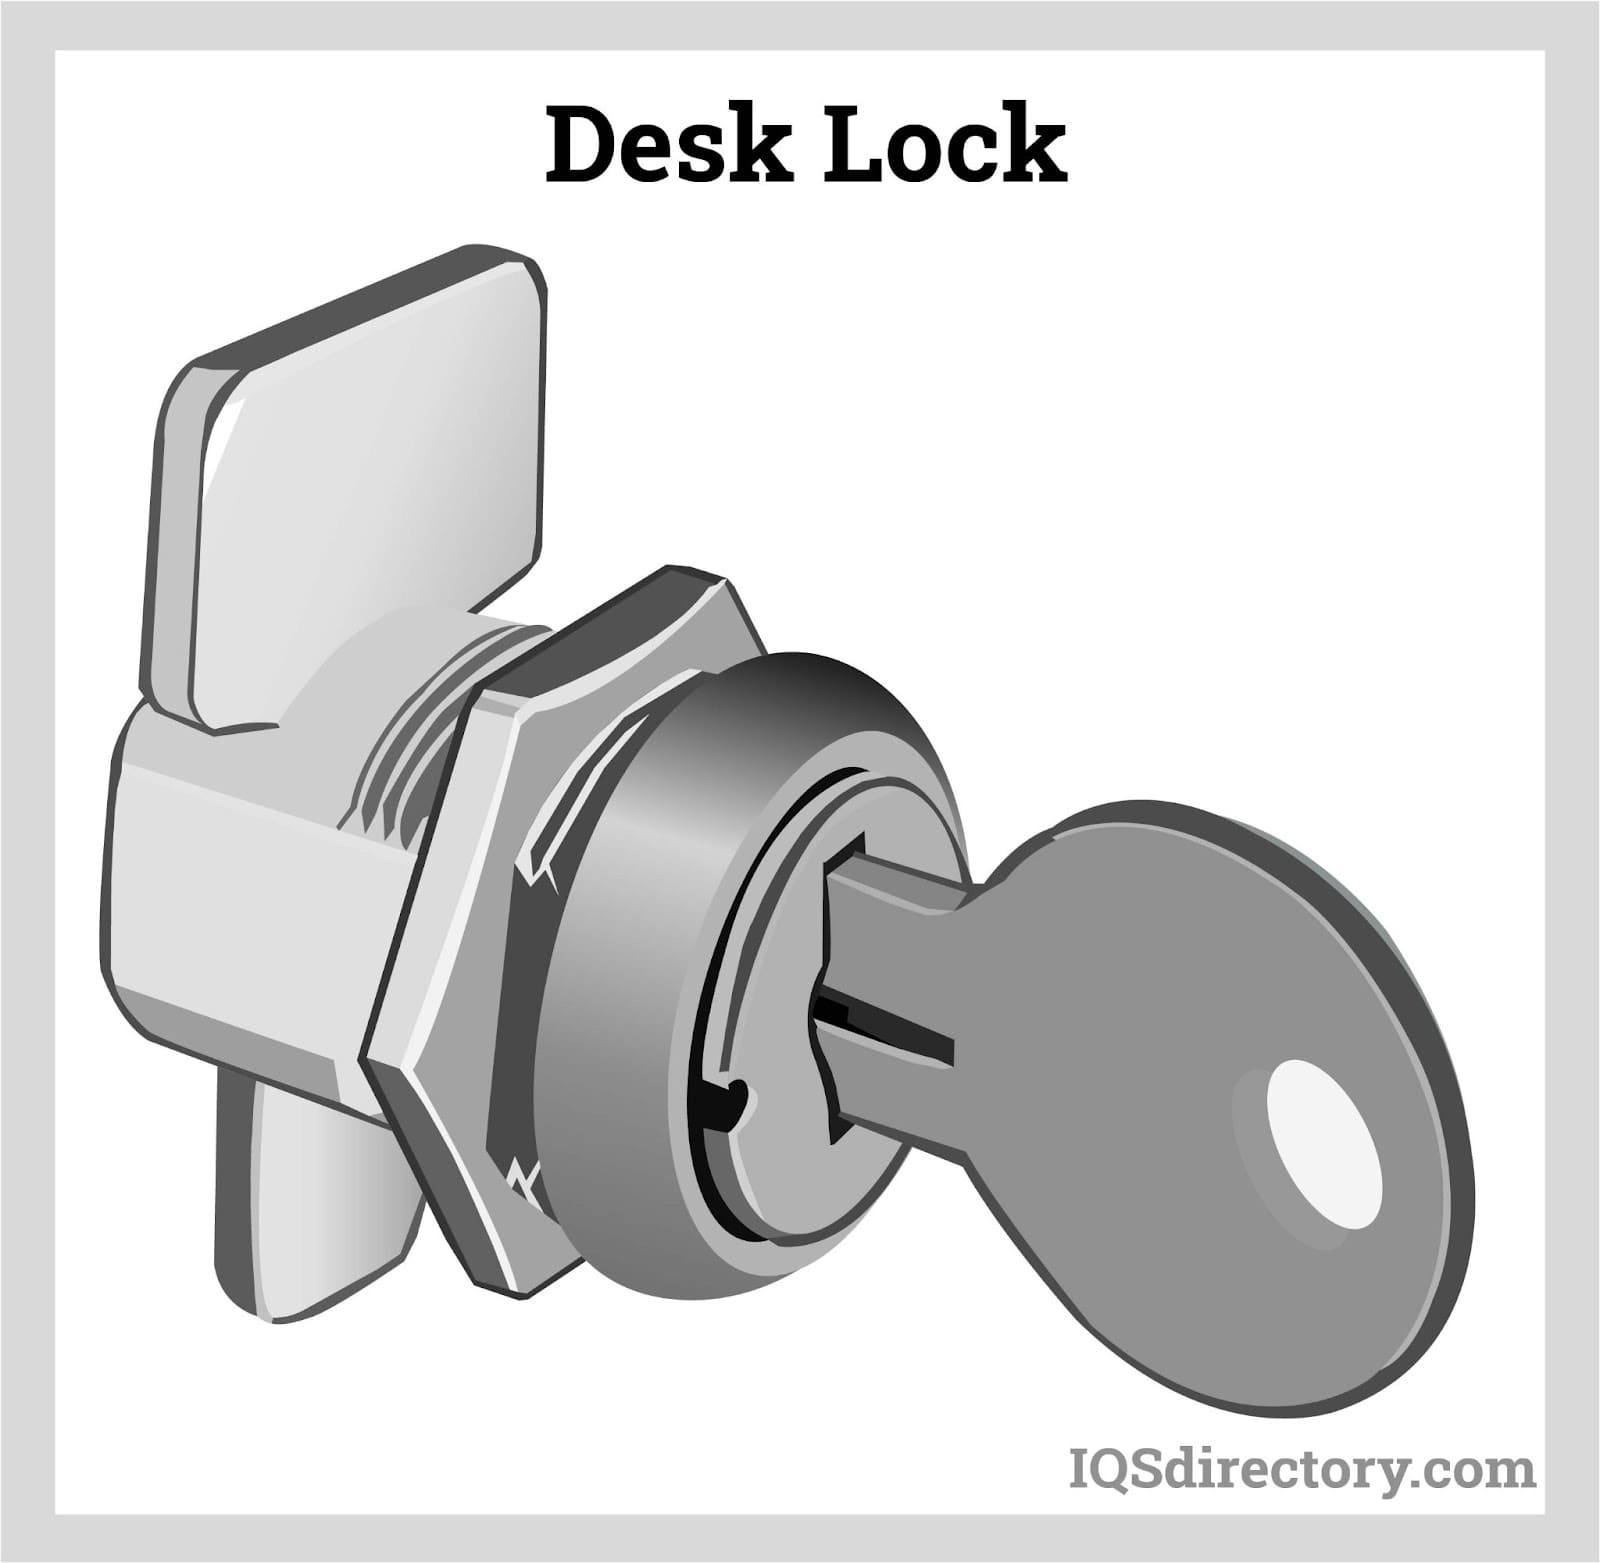 How to Pick an Inside Door Lock